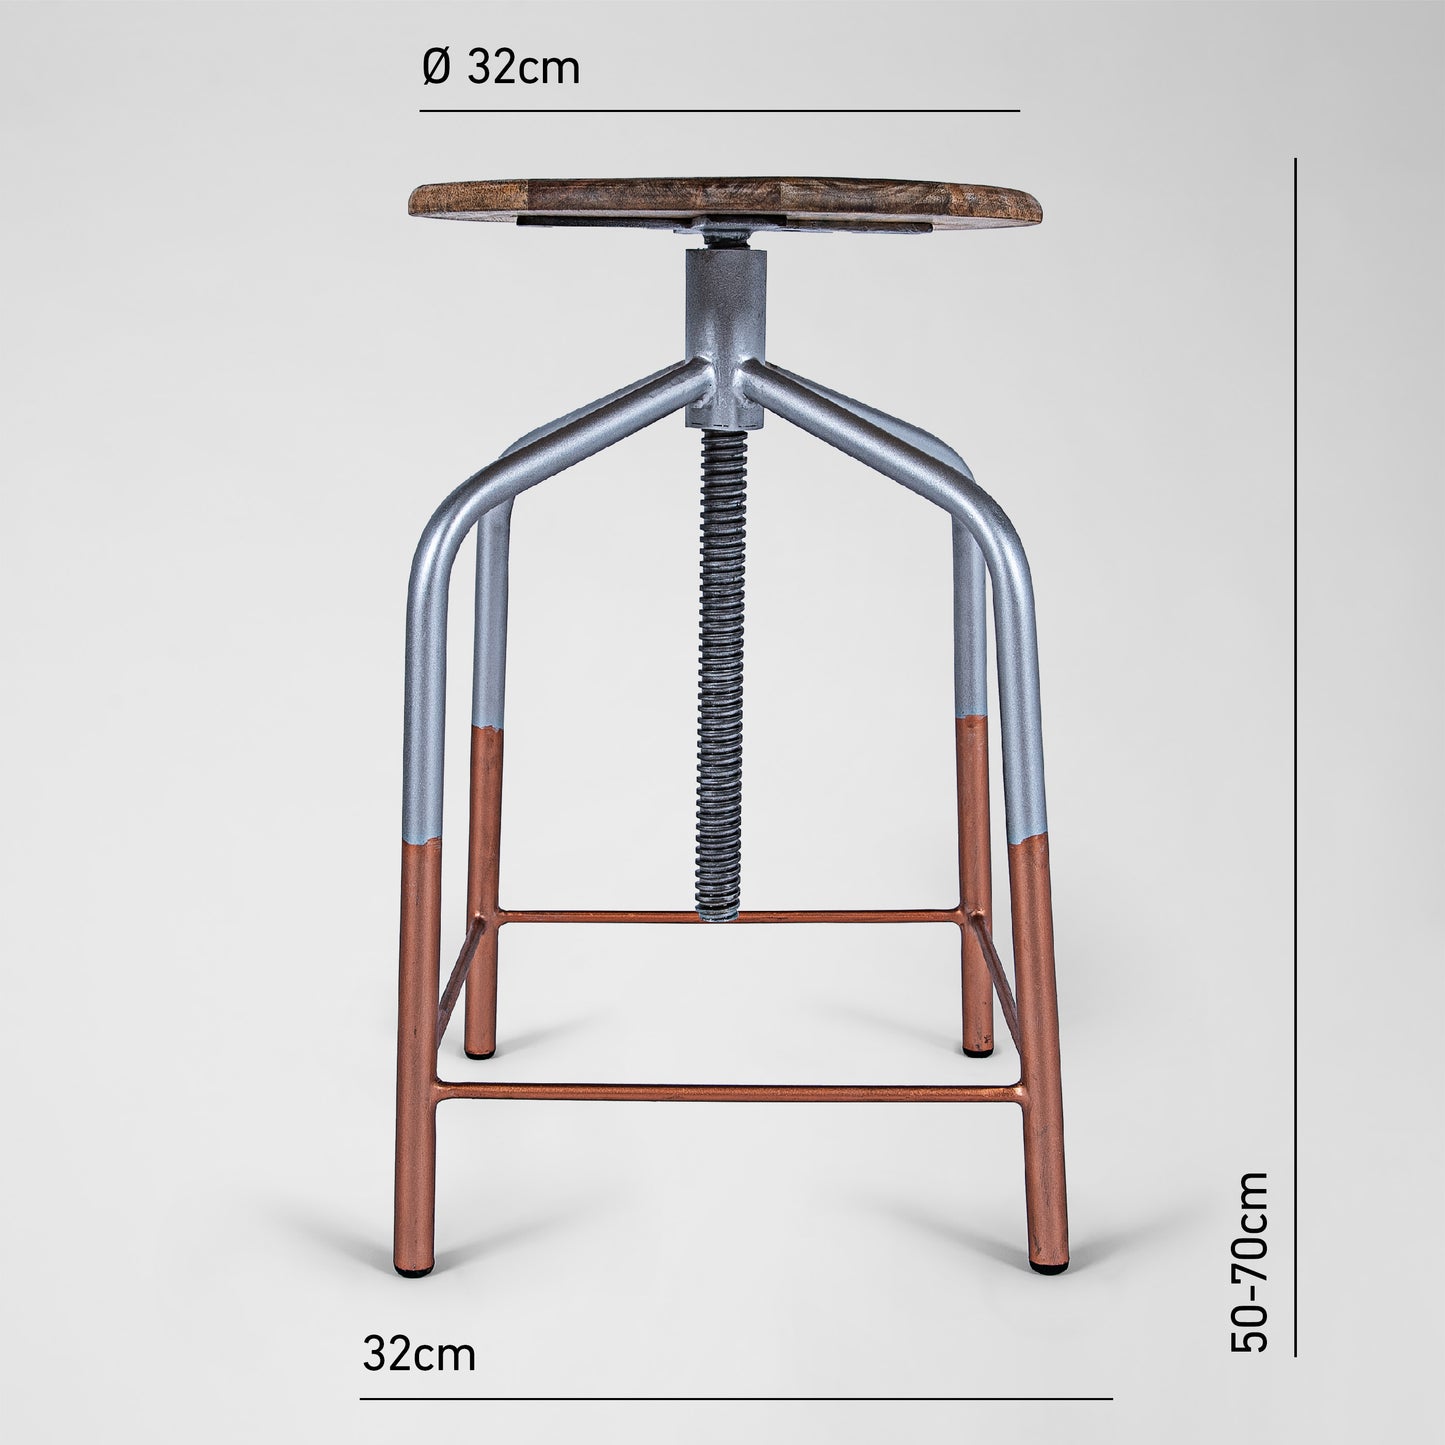 Mr. Copper Feet - Handmade Industrie-Design Dreh-Hocker aus Metall mit Holzsitz in silber mit Kupferfüßen